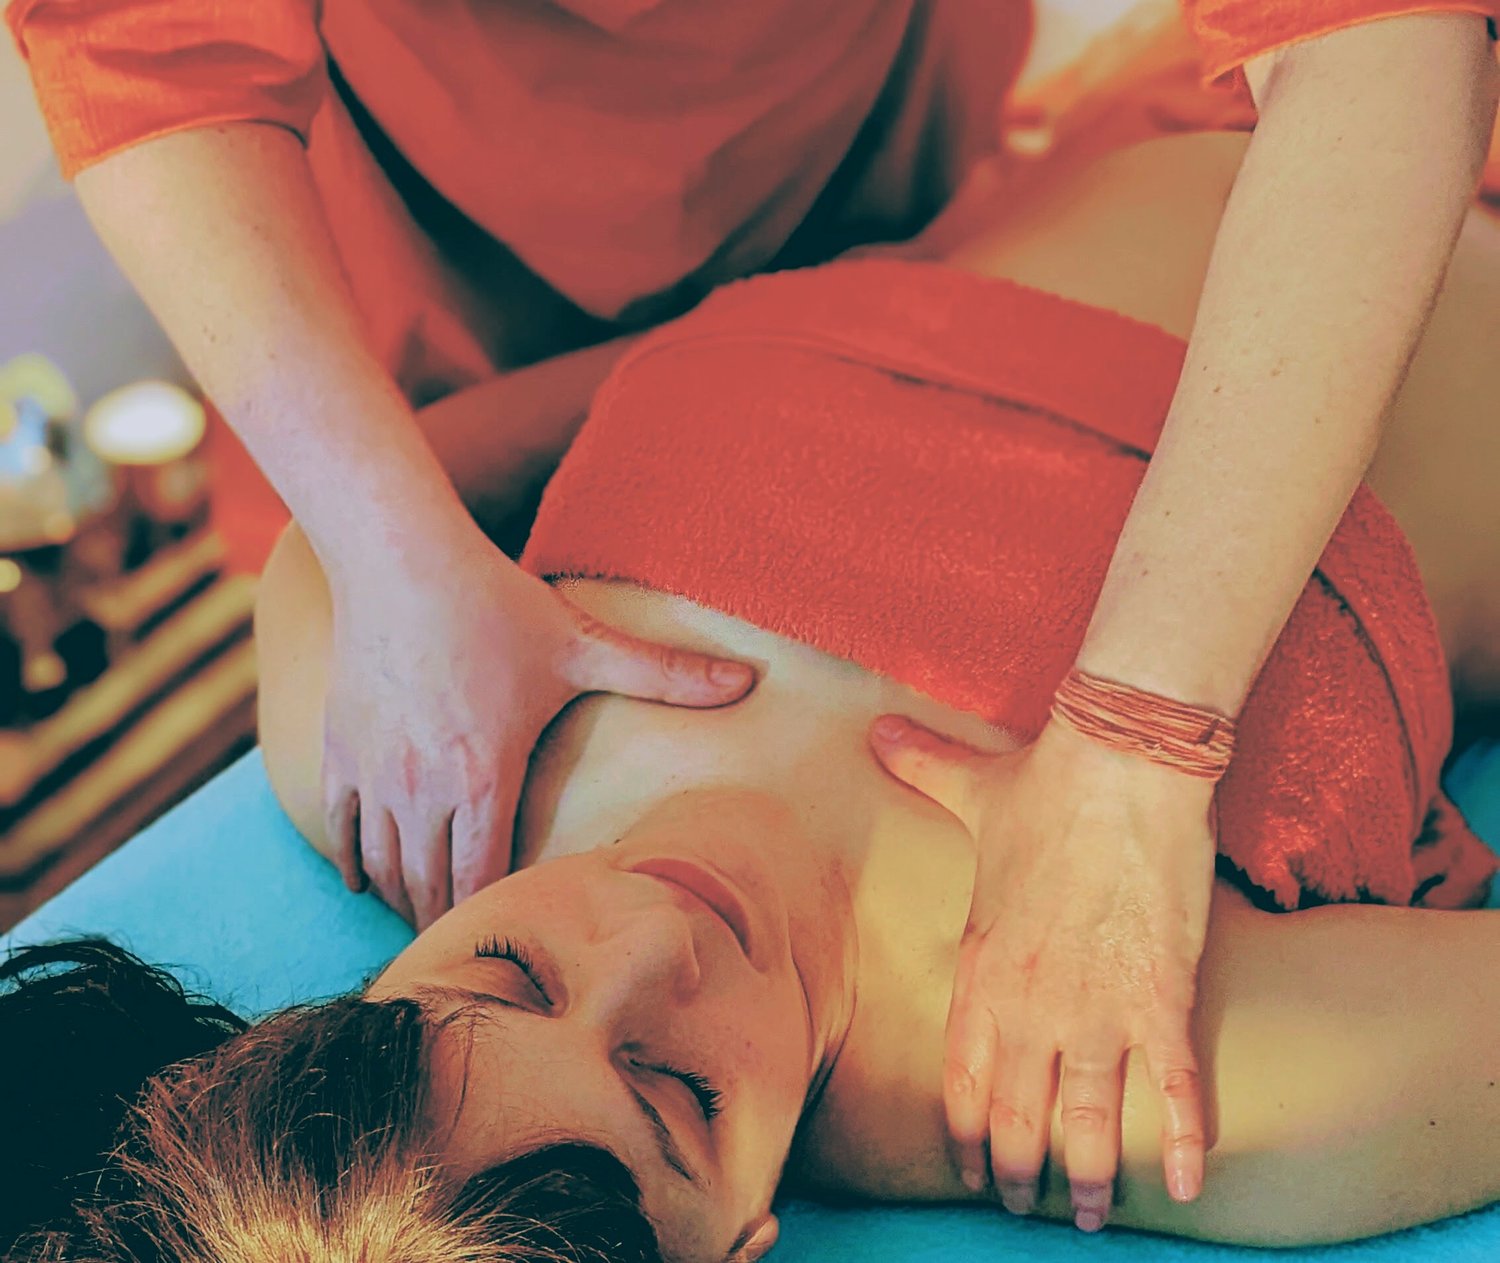 Comment bien faire un massage relaxant ?